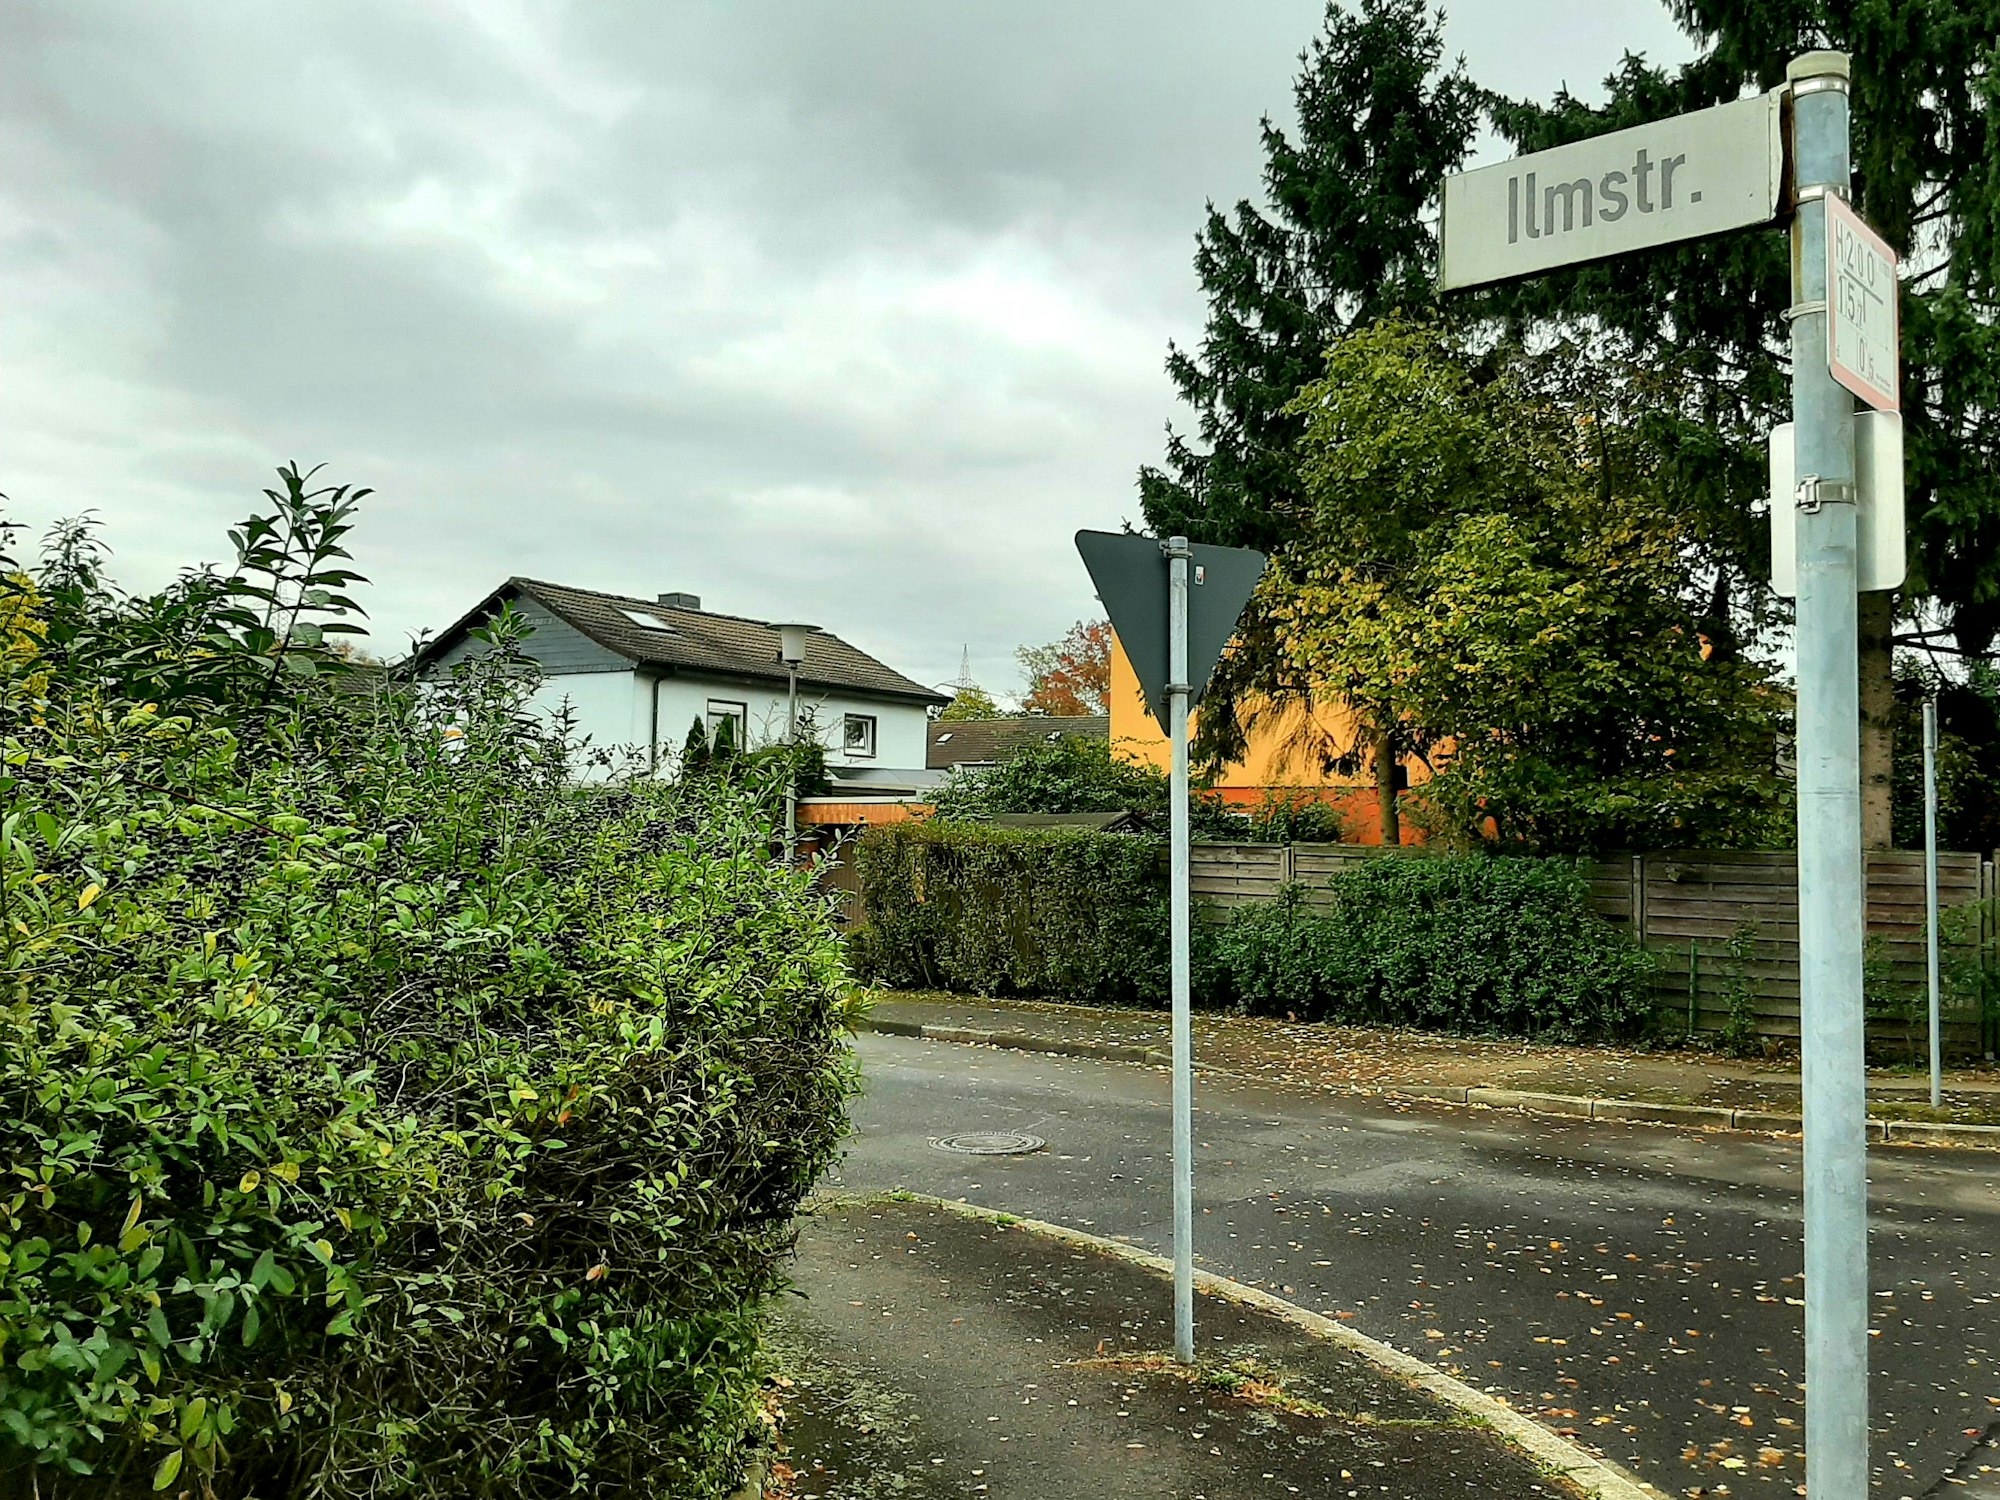 An einer Straße steht ein Schild mit der Aufschrift Ilmstr., im Hintergrund ist ein einstöckiges Wohnhaus zu sehen sowie grüne Hecken.